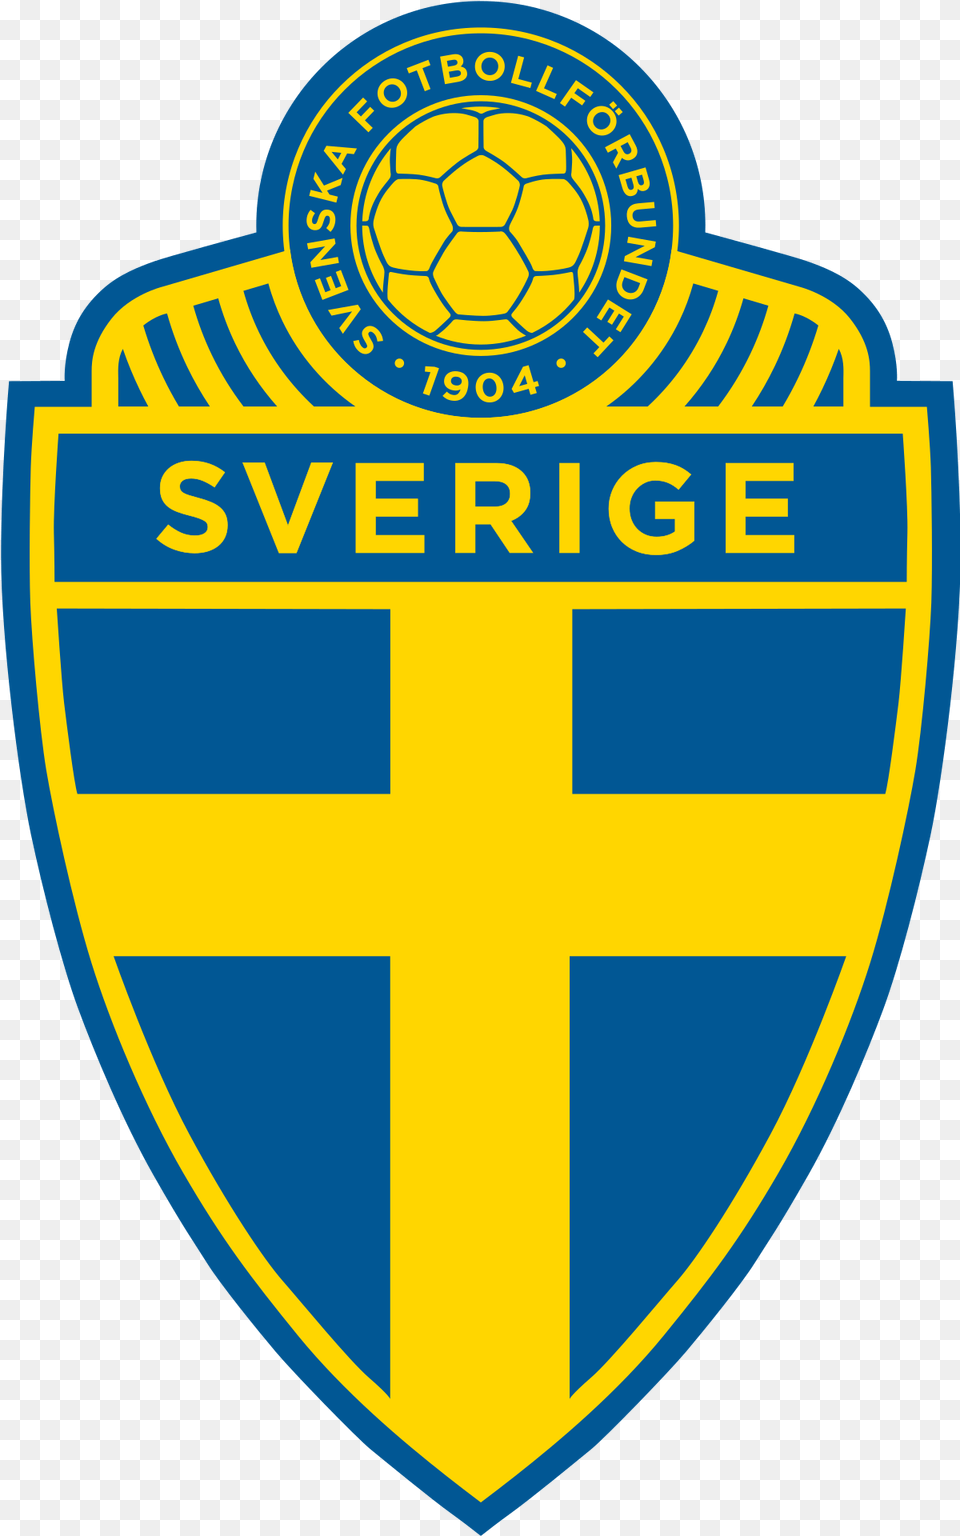 Sweden National Football Team Sweden National Football Team Logo, Badge, Symbol, Ball, Soccer Png Image